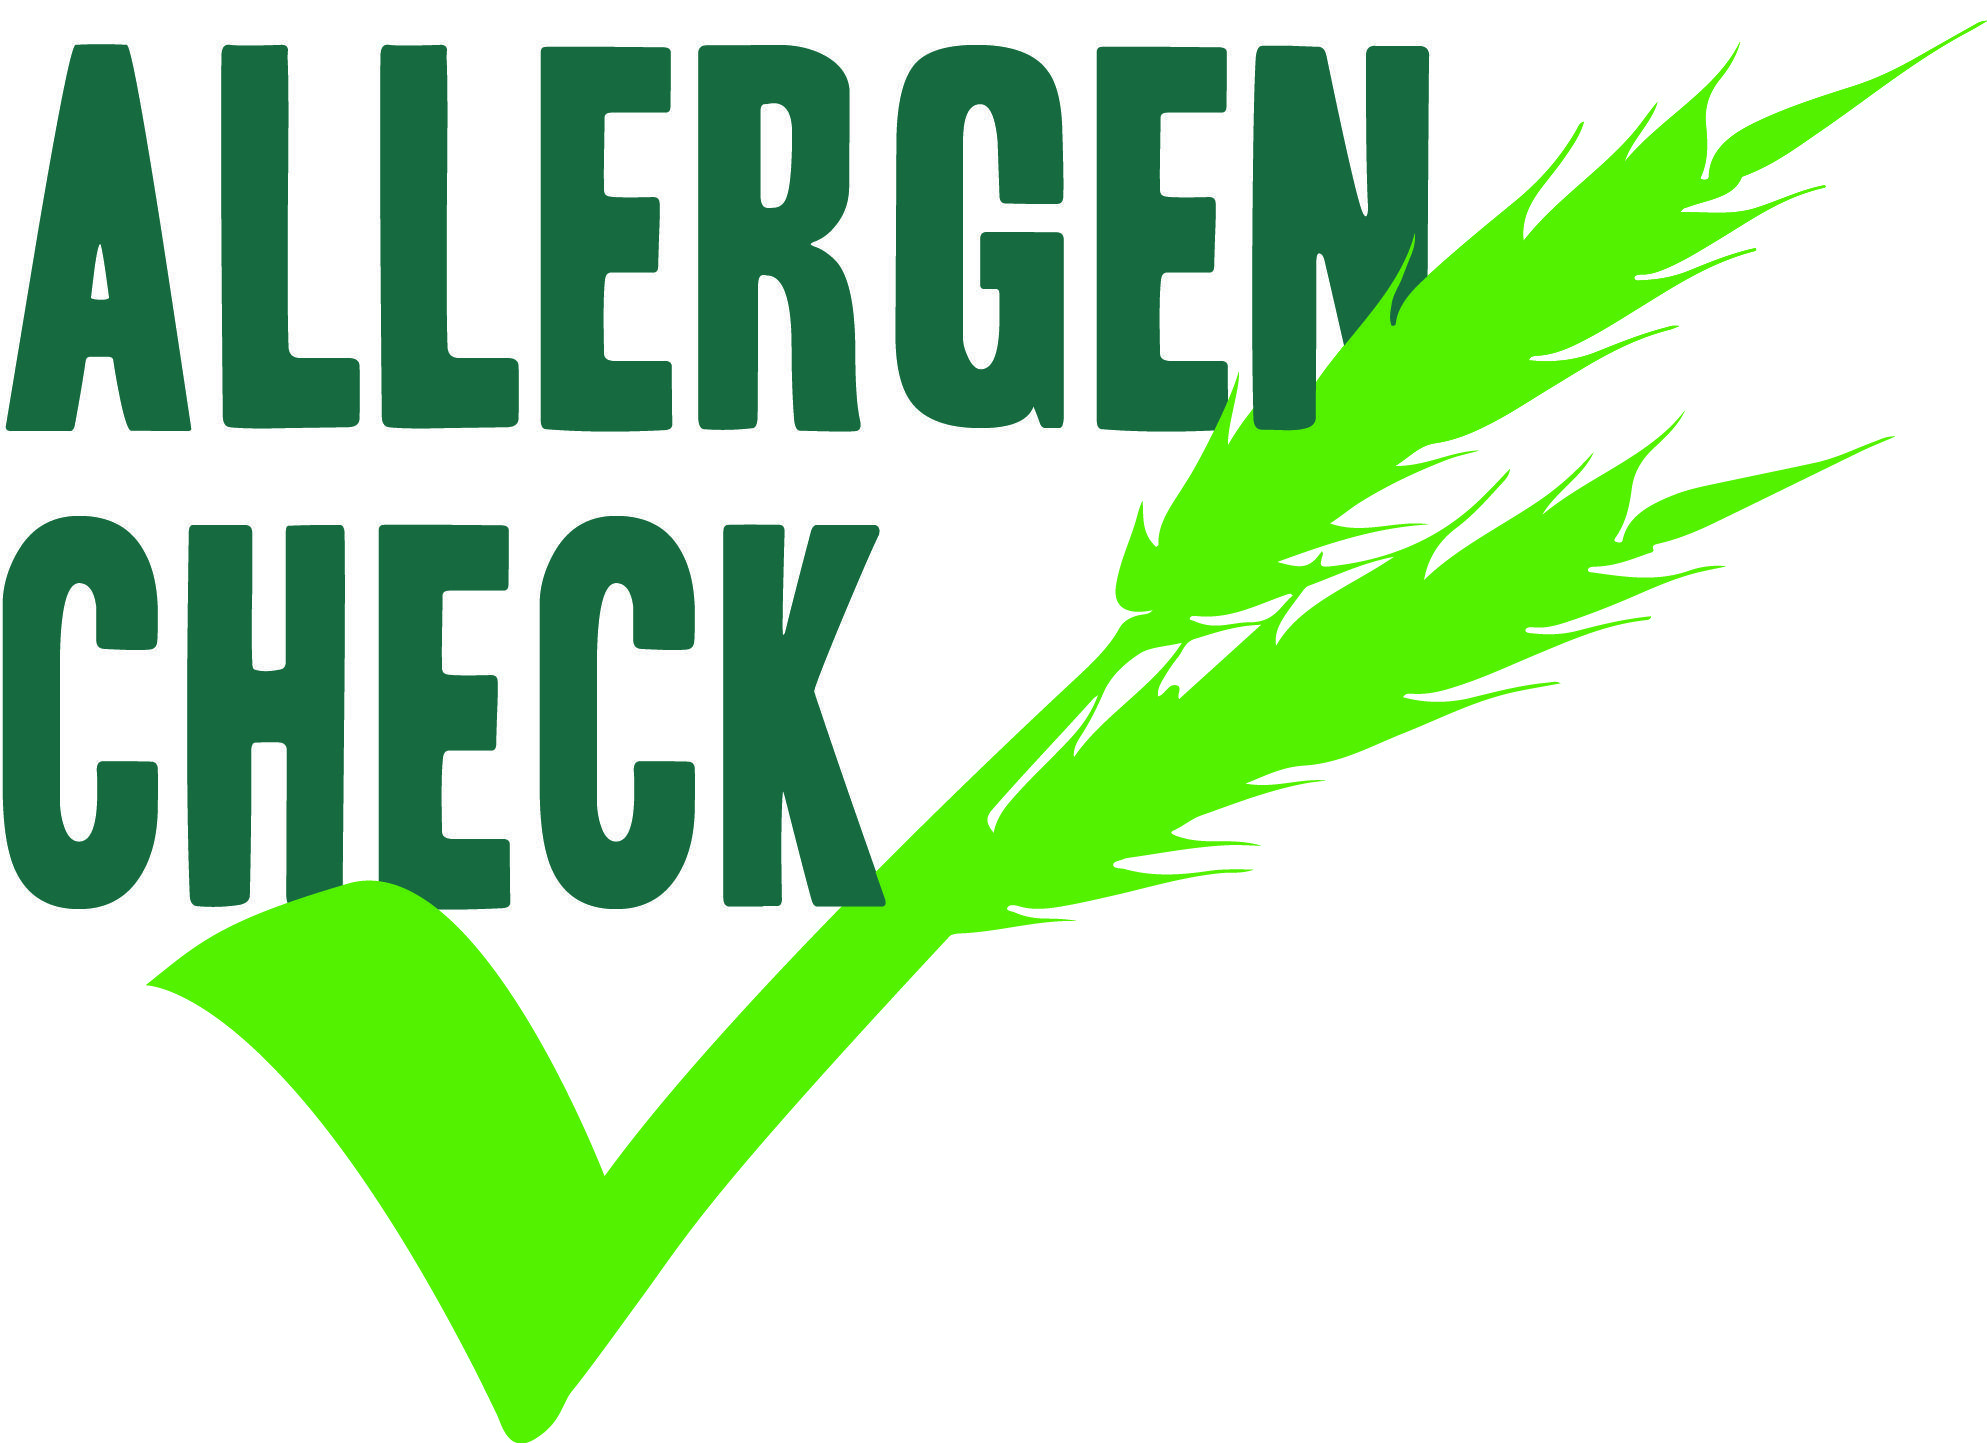 Allergen Logo - Thomas Ridley Foodservice launch “Allergen Check”